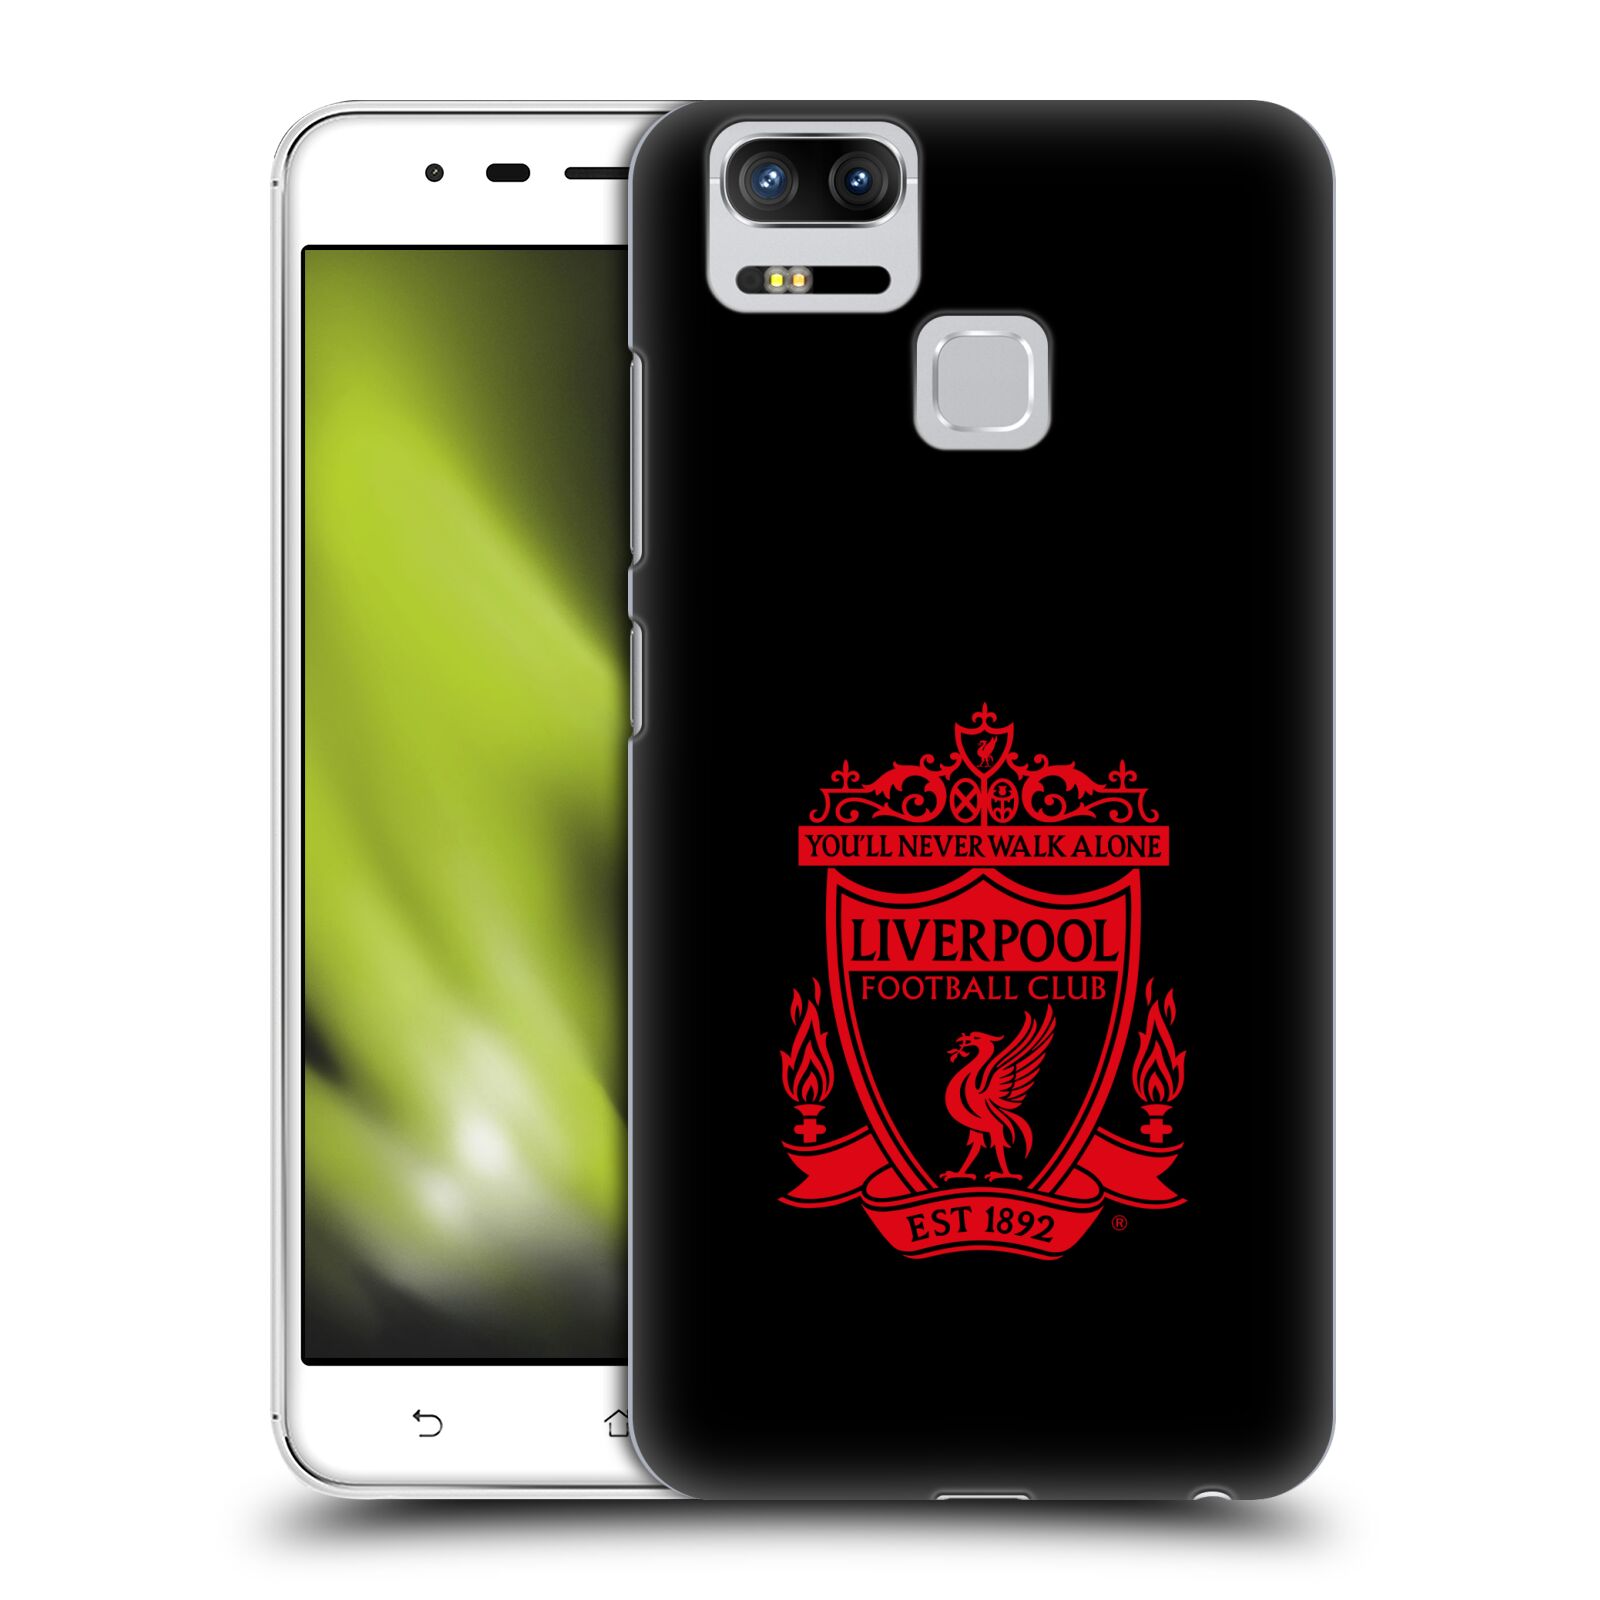 HEAD CASE plastový obal na mobil Asus Zenfone 3 Zoom ZE553KL Fotbalový klub Liverpool rudý znak černé pozadí